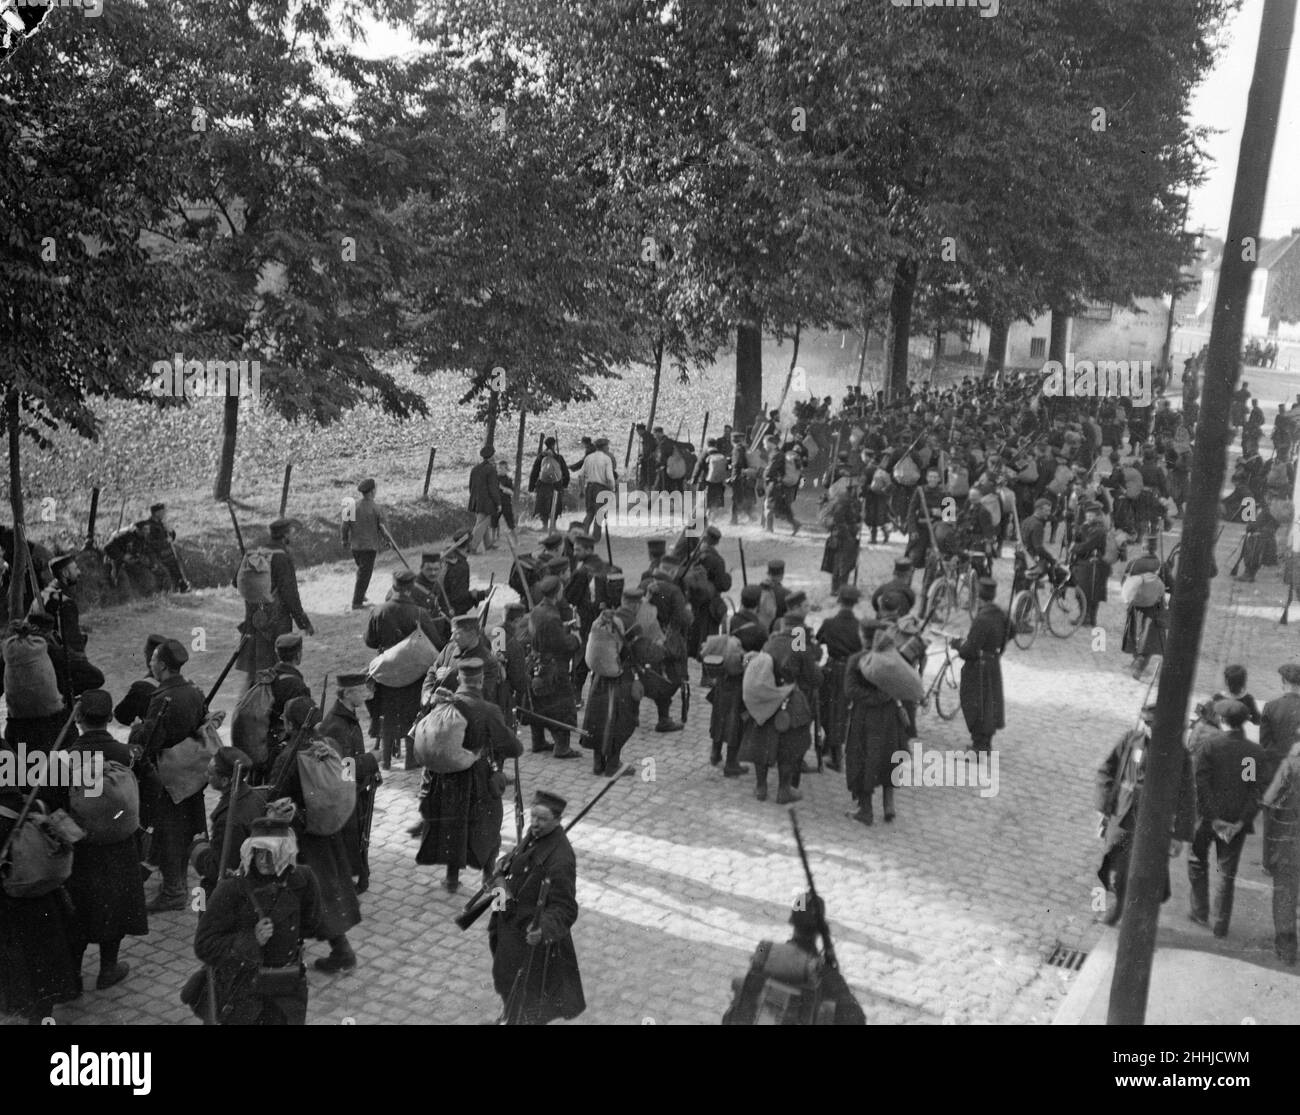 La strada per Ostenda. Ottobre 1914 le truppe belghe arrivano su strada al porto belga della Manica di Ostenda dopo la caduta di Anversa. Migliaia e migliaia di fanti esausti ricoperti di fango, quasi in stracci; cavalleria, artiglieria, e un enorme numero di carri visti qui in avvicinamento al porto. Foto Stock